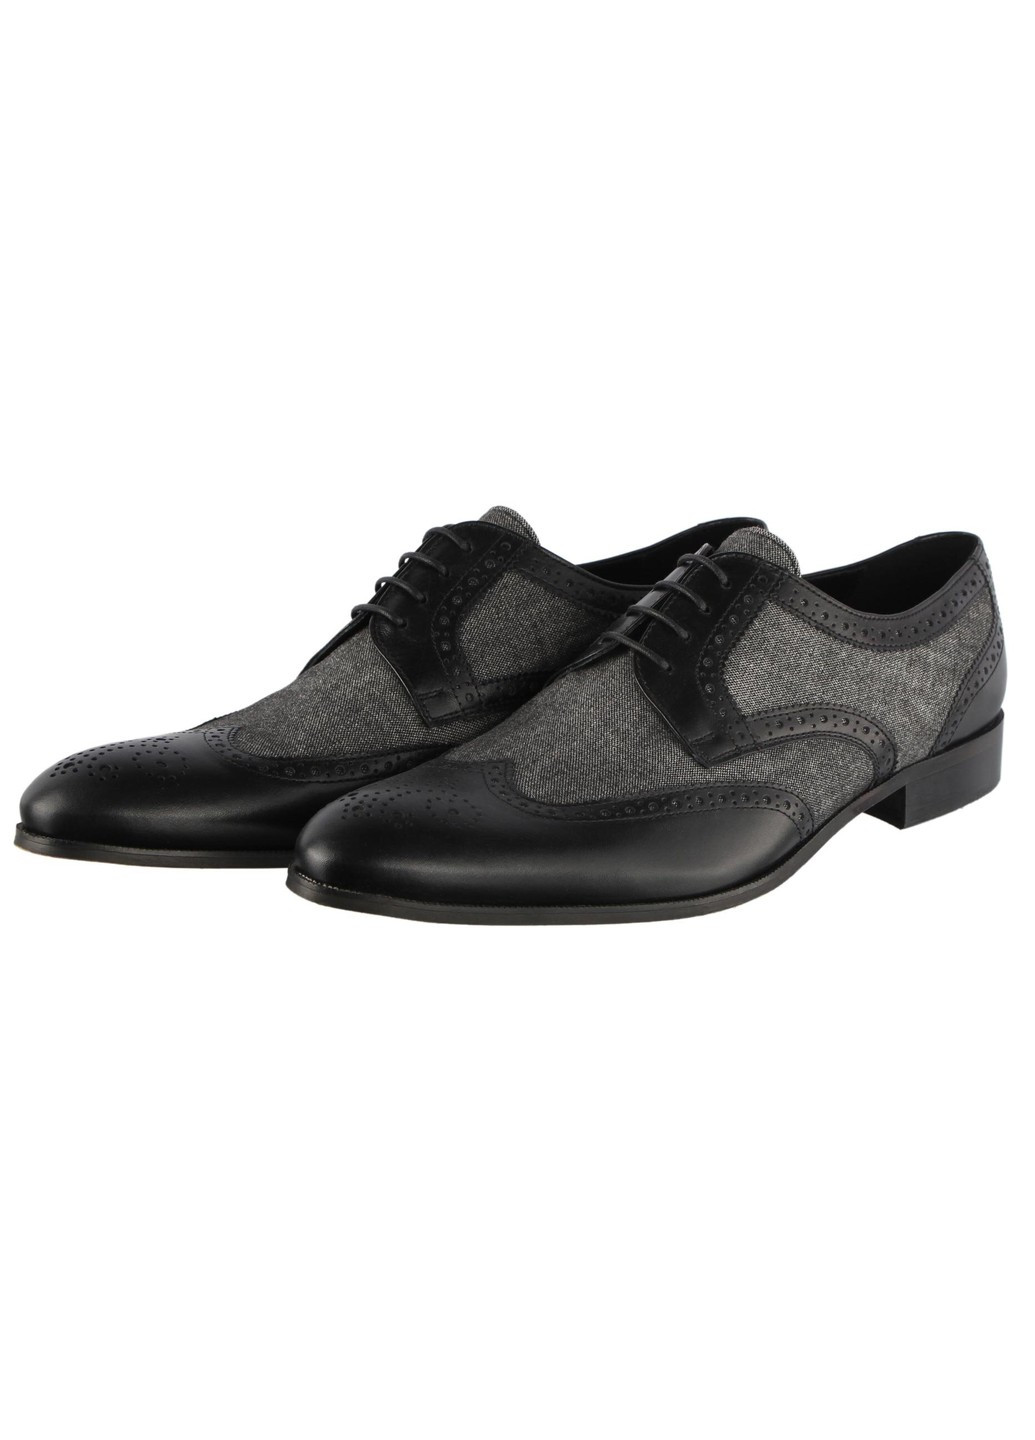 Черные мужские классические туфли 5653 Conhpol на шнурках